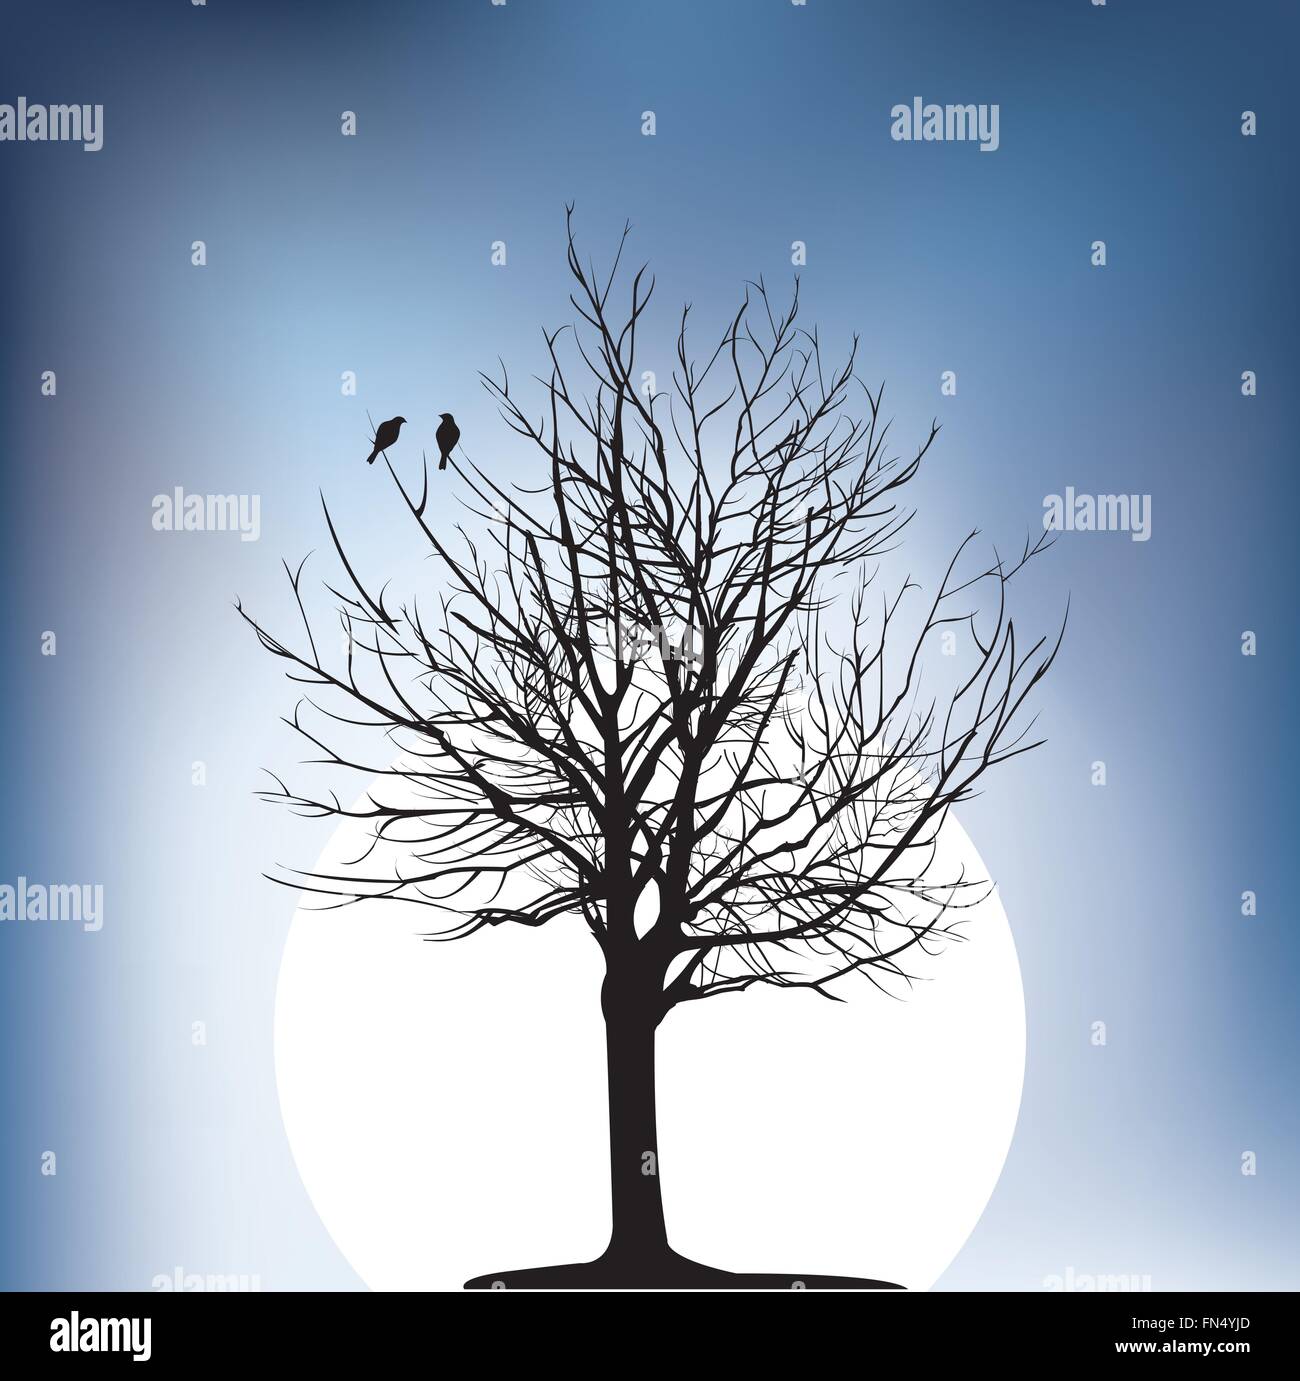 Deux oiseaux sur un arbre dans la nuit Illustration de Vecteur